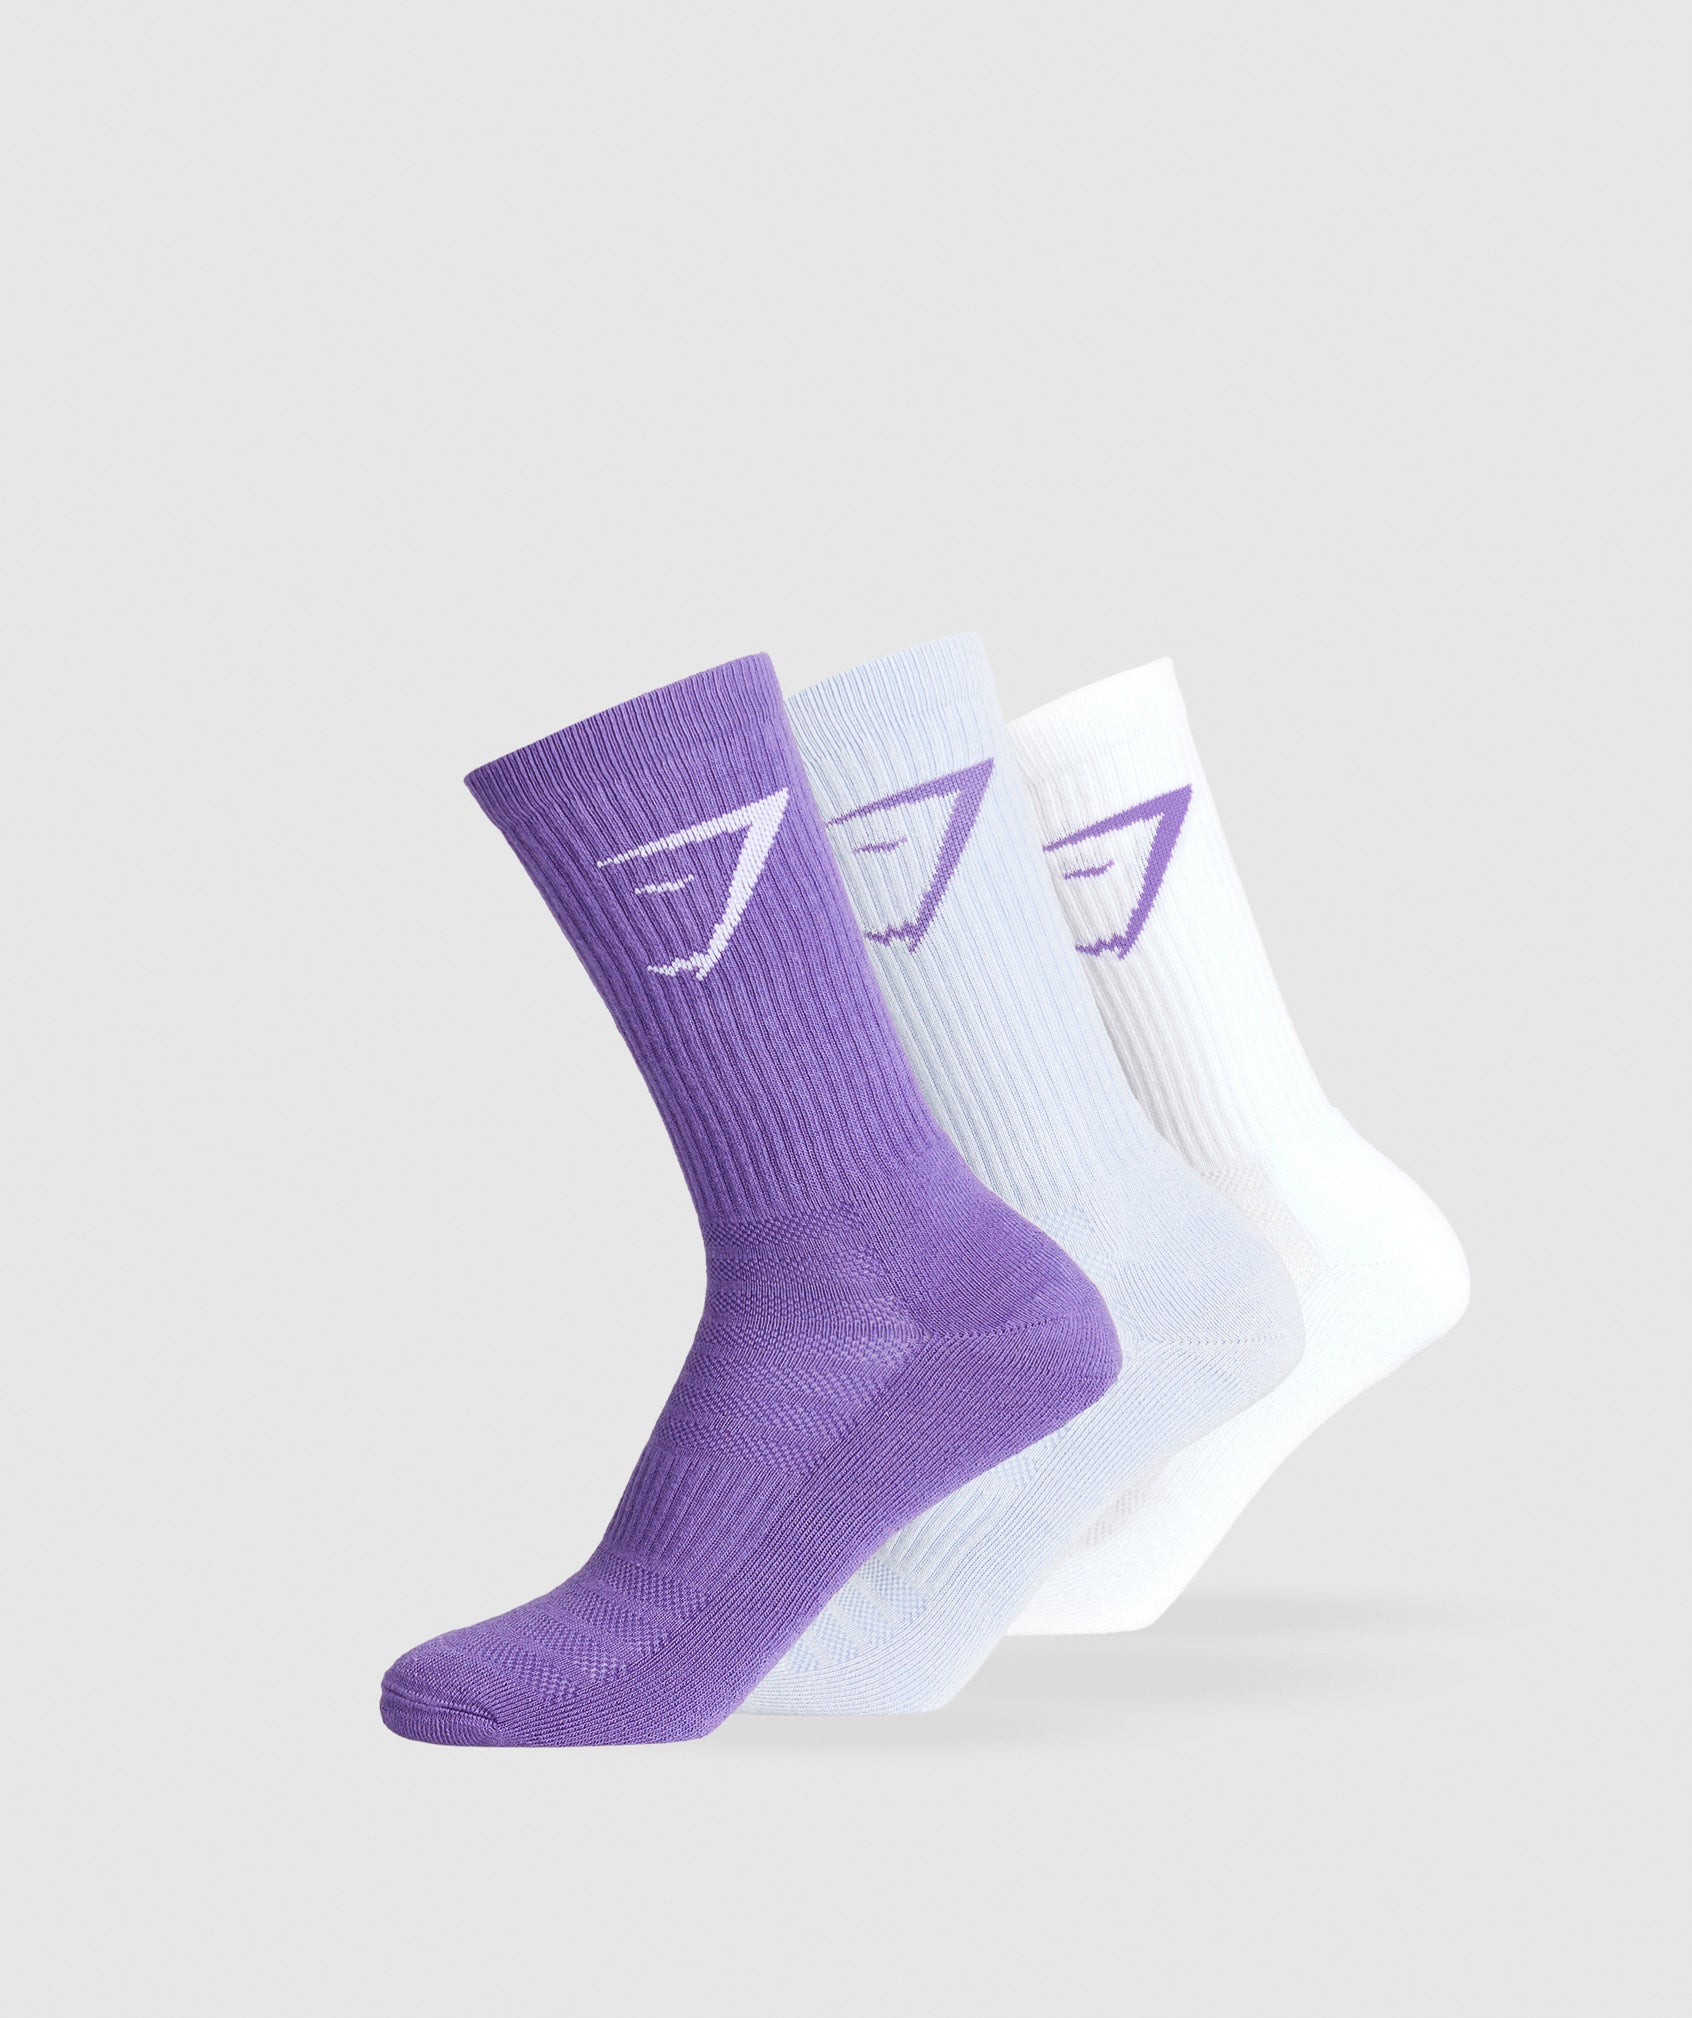 Crew Socks 3pk in Stellar Purple/Silver Lilac/White ist nicht auf Lager